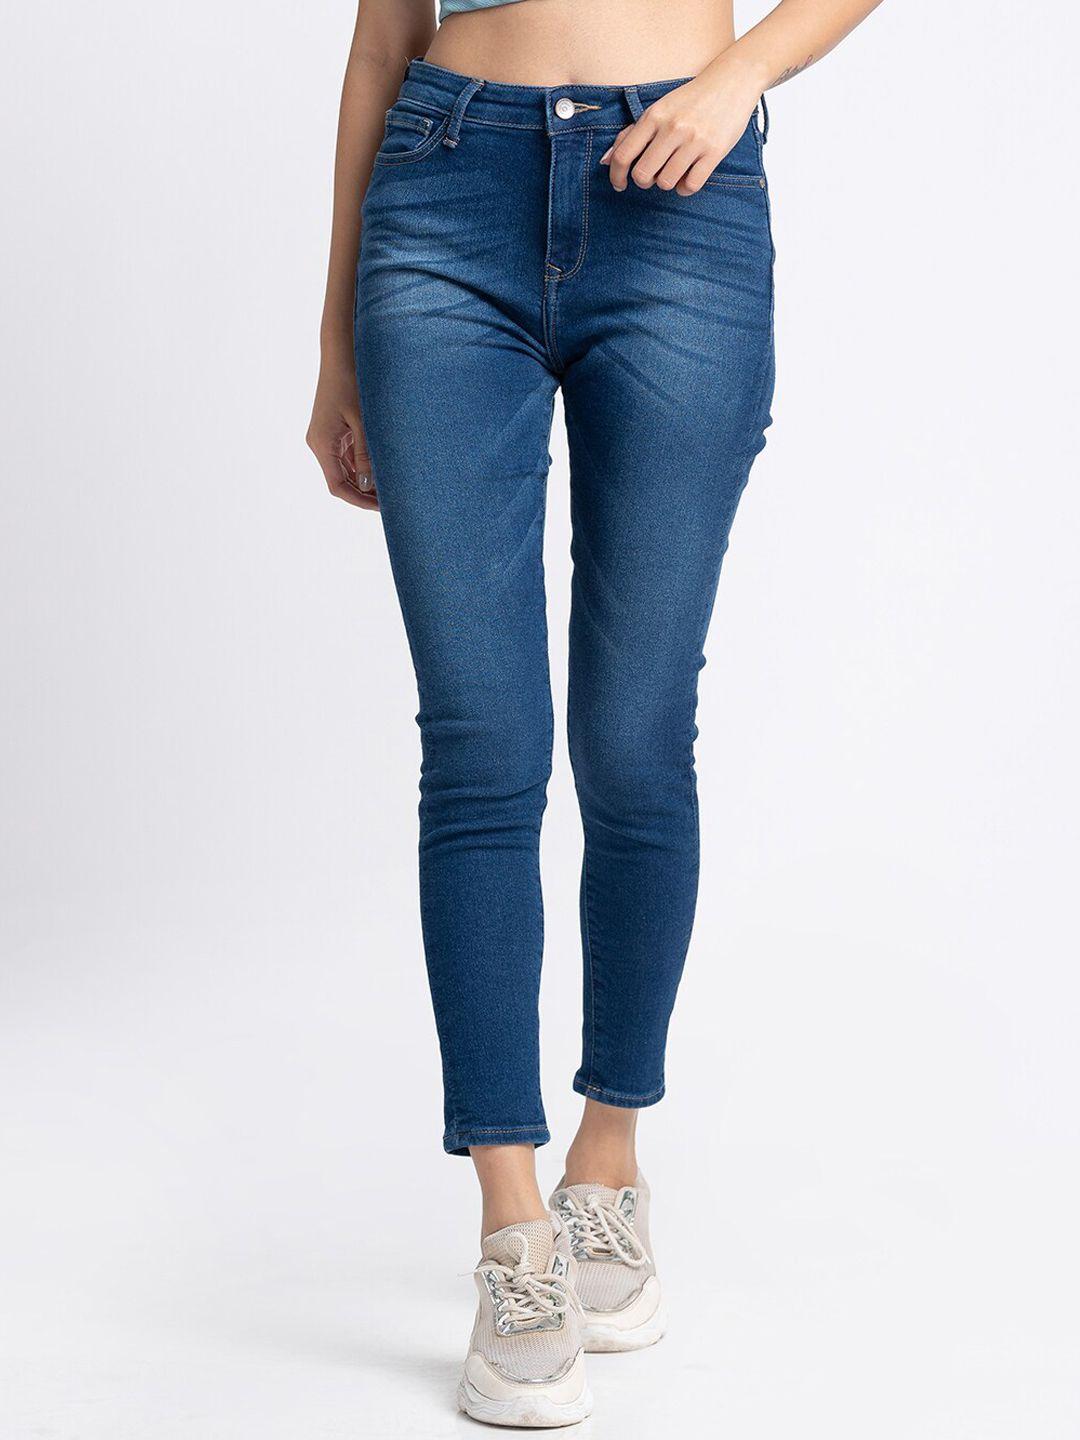 spykar-women-blue-slim-fit-light-fade-jeans